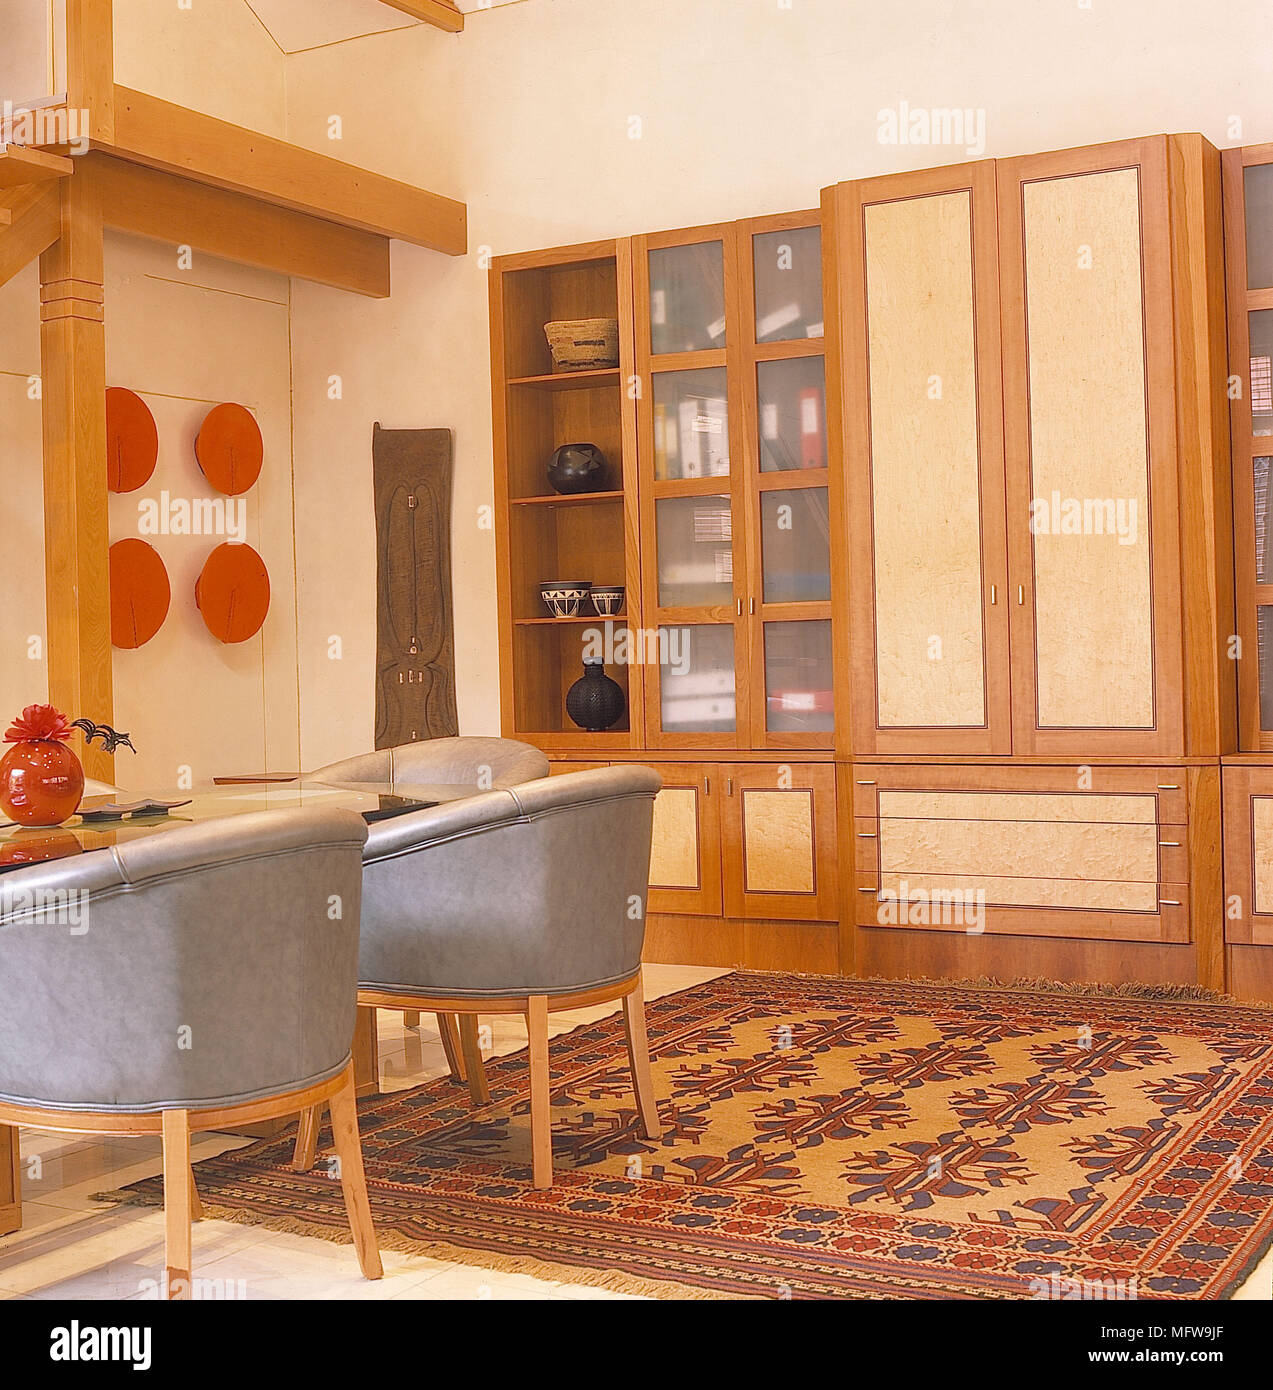 Salón detalle paredes blancas de madera vitrinas de vidrio cuero gris alfombra bañeras interiores habitaciones modernas estanterías de cerámica Foto de stock